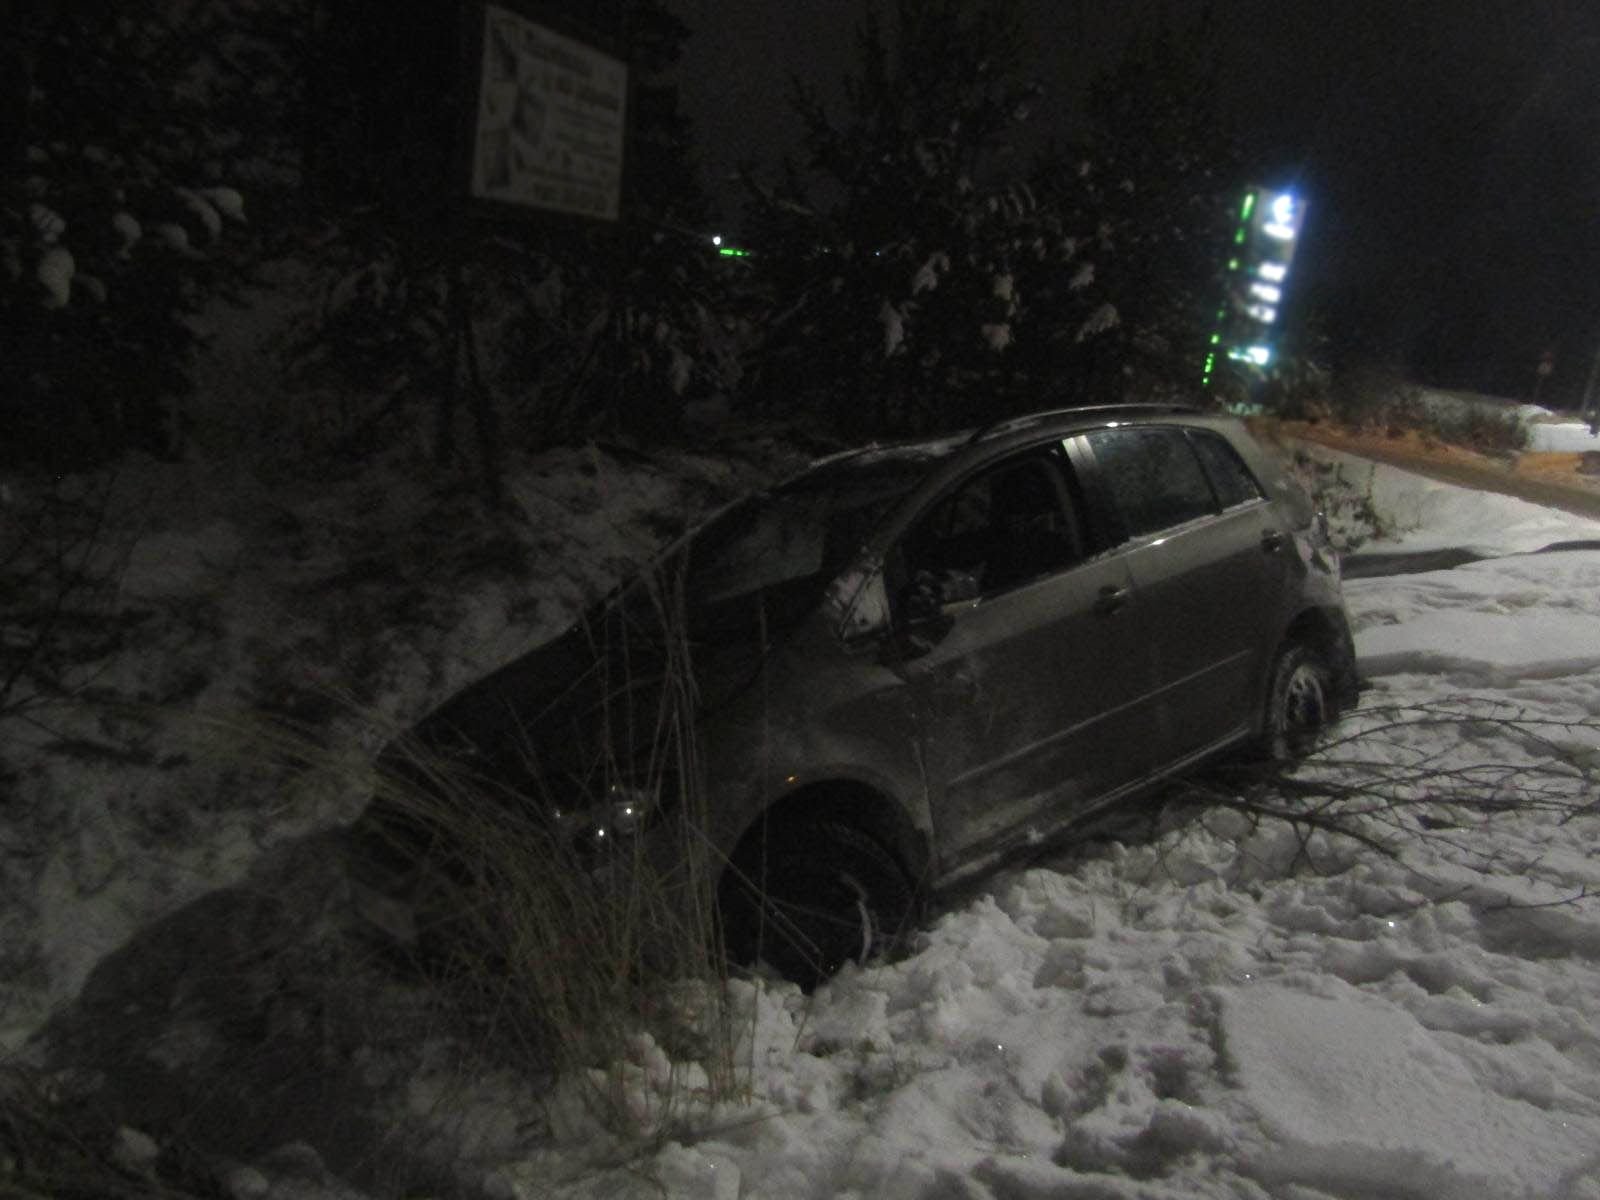 

Пьяный водитель устроил ДТП с опрокидыванием в Ижевске

